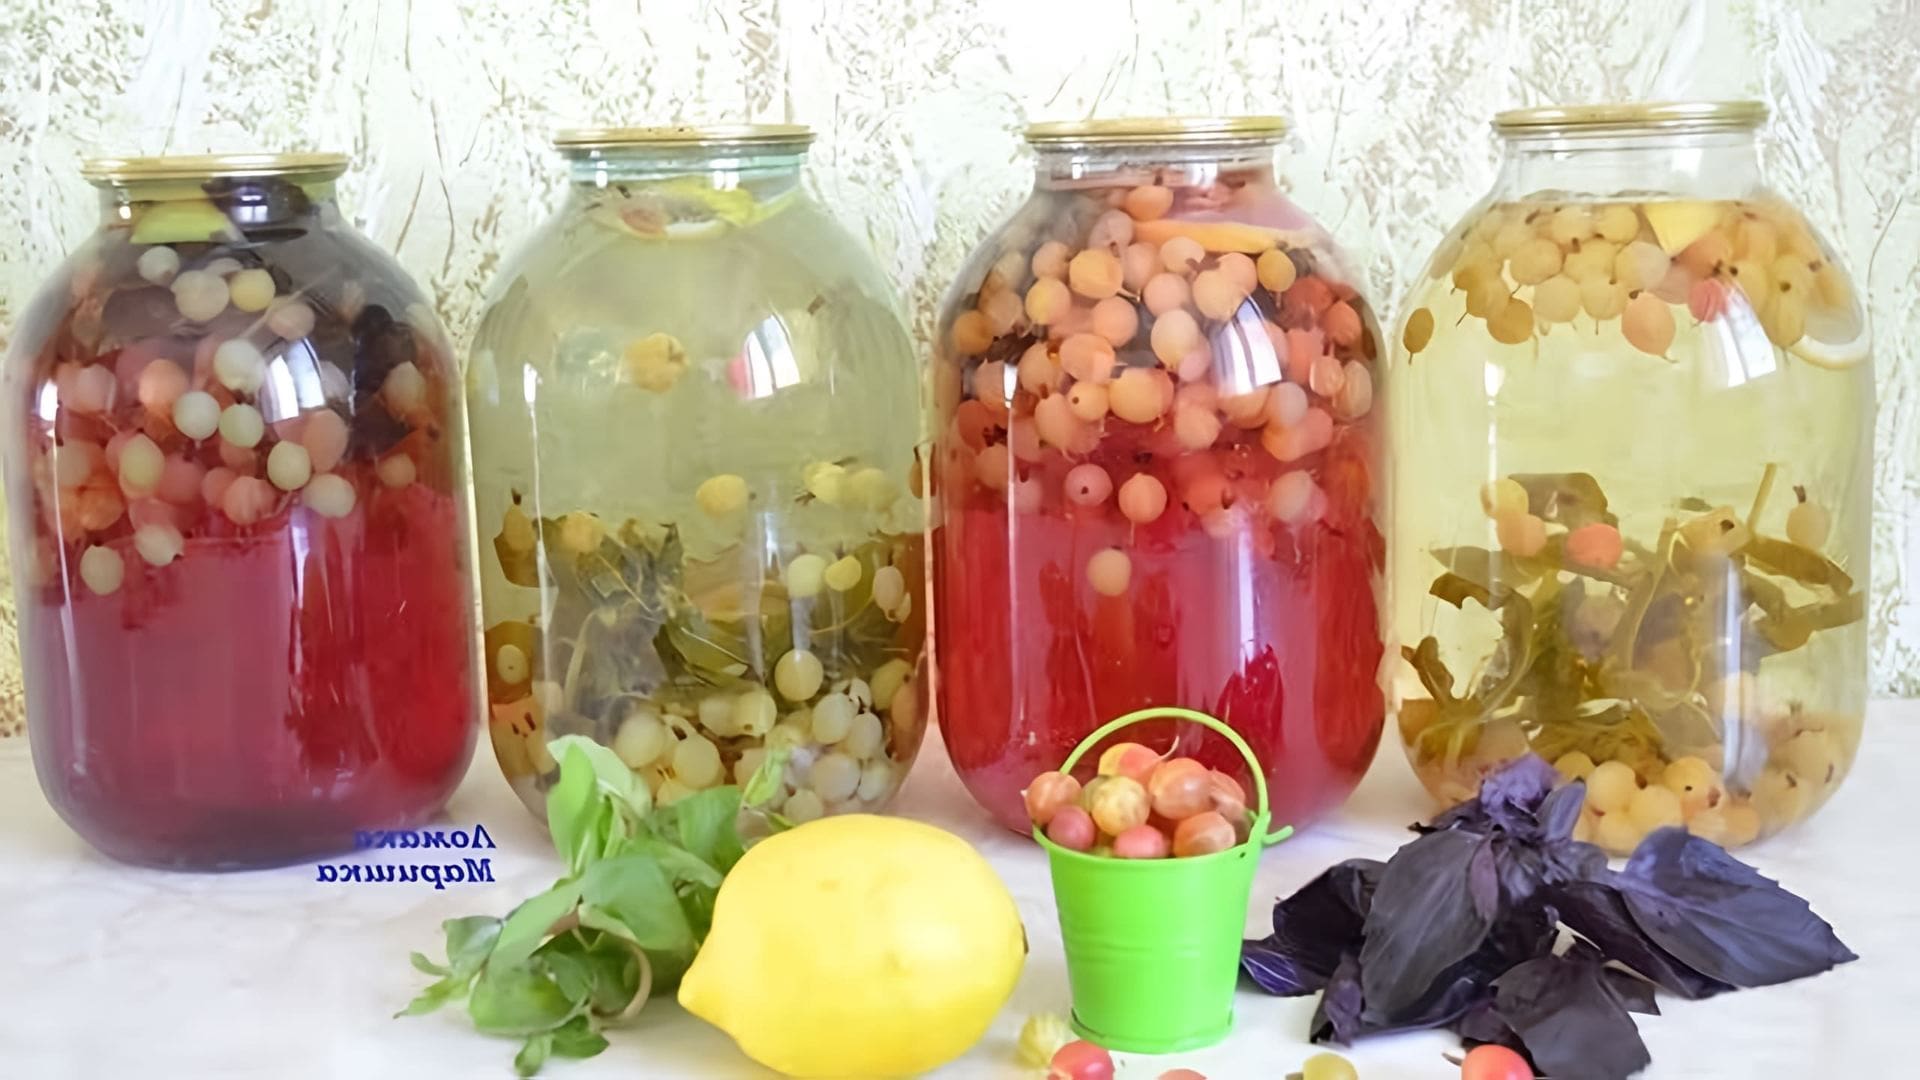 В этом видео демонстрируется рецепт приготовления мохито из крыжовника на зиму